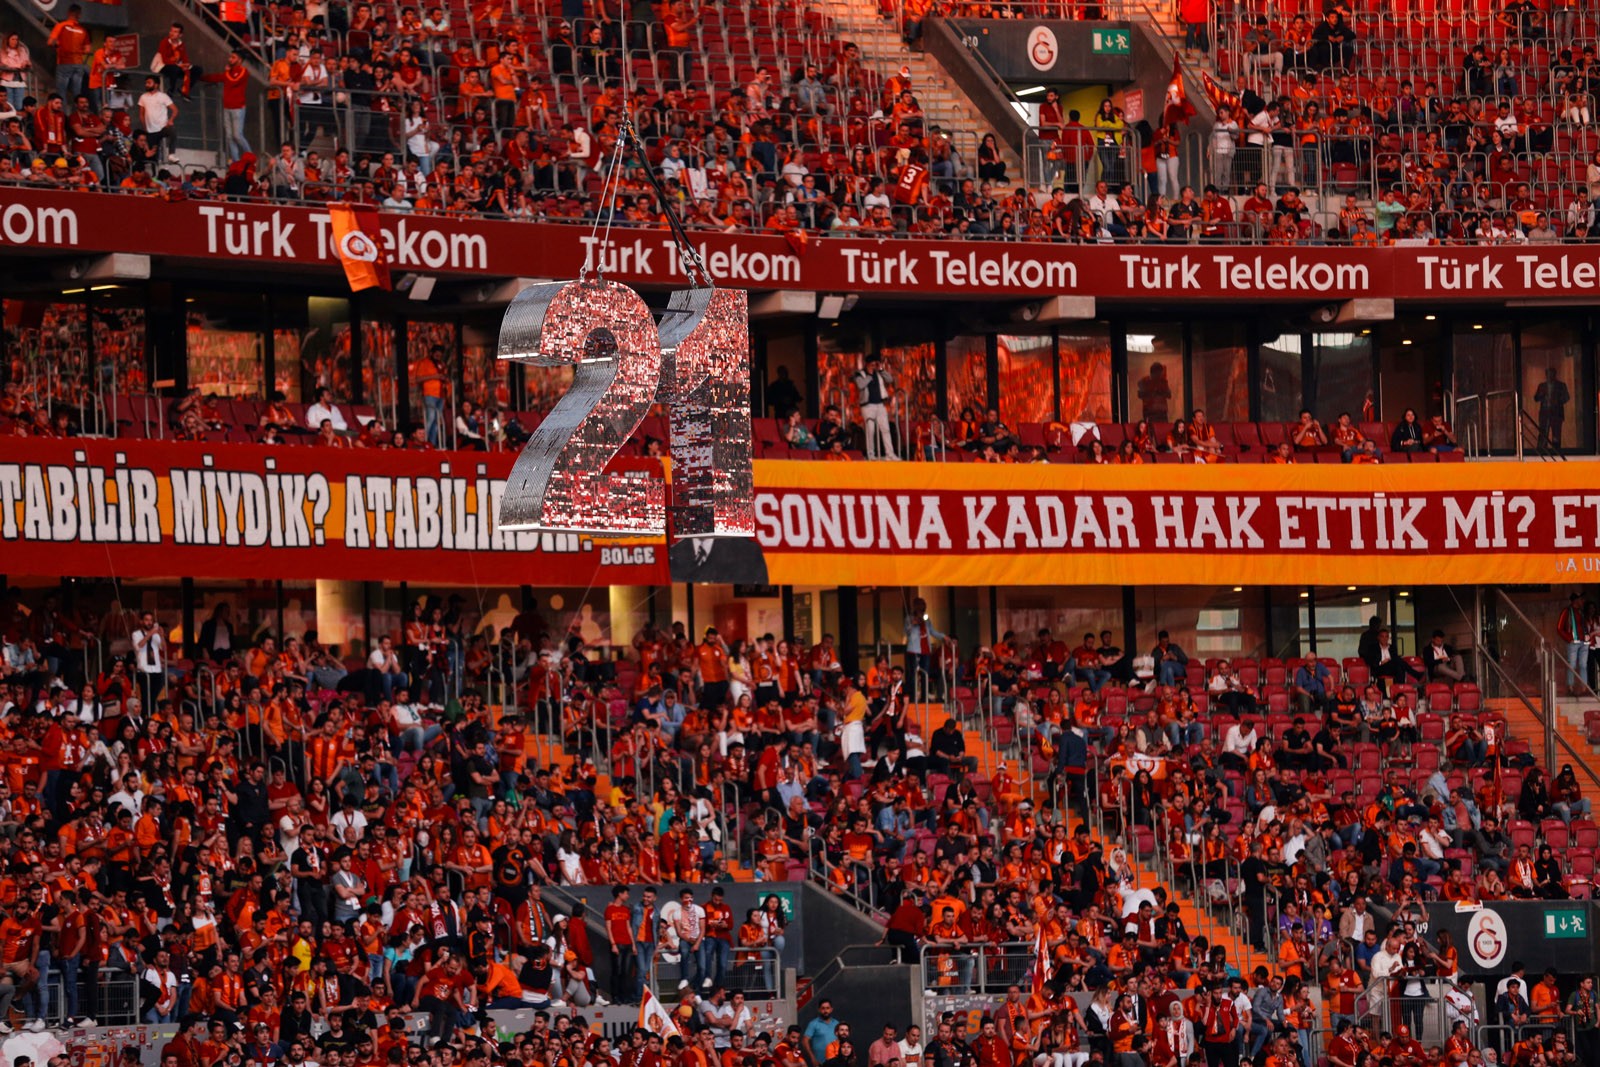 Galatasaray Tür-Banner Fahne Party-Deko Artikel Türspanner